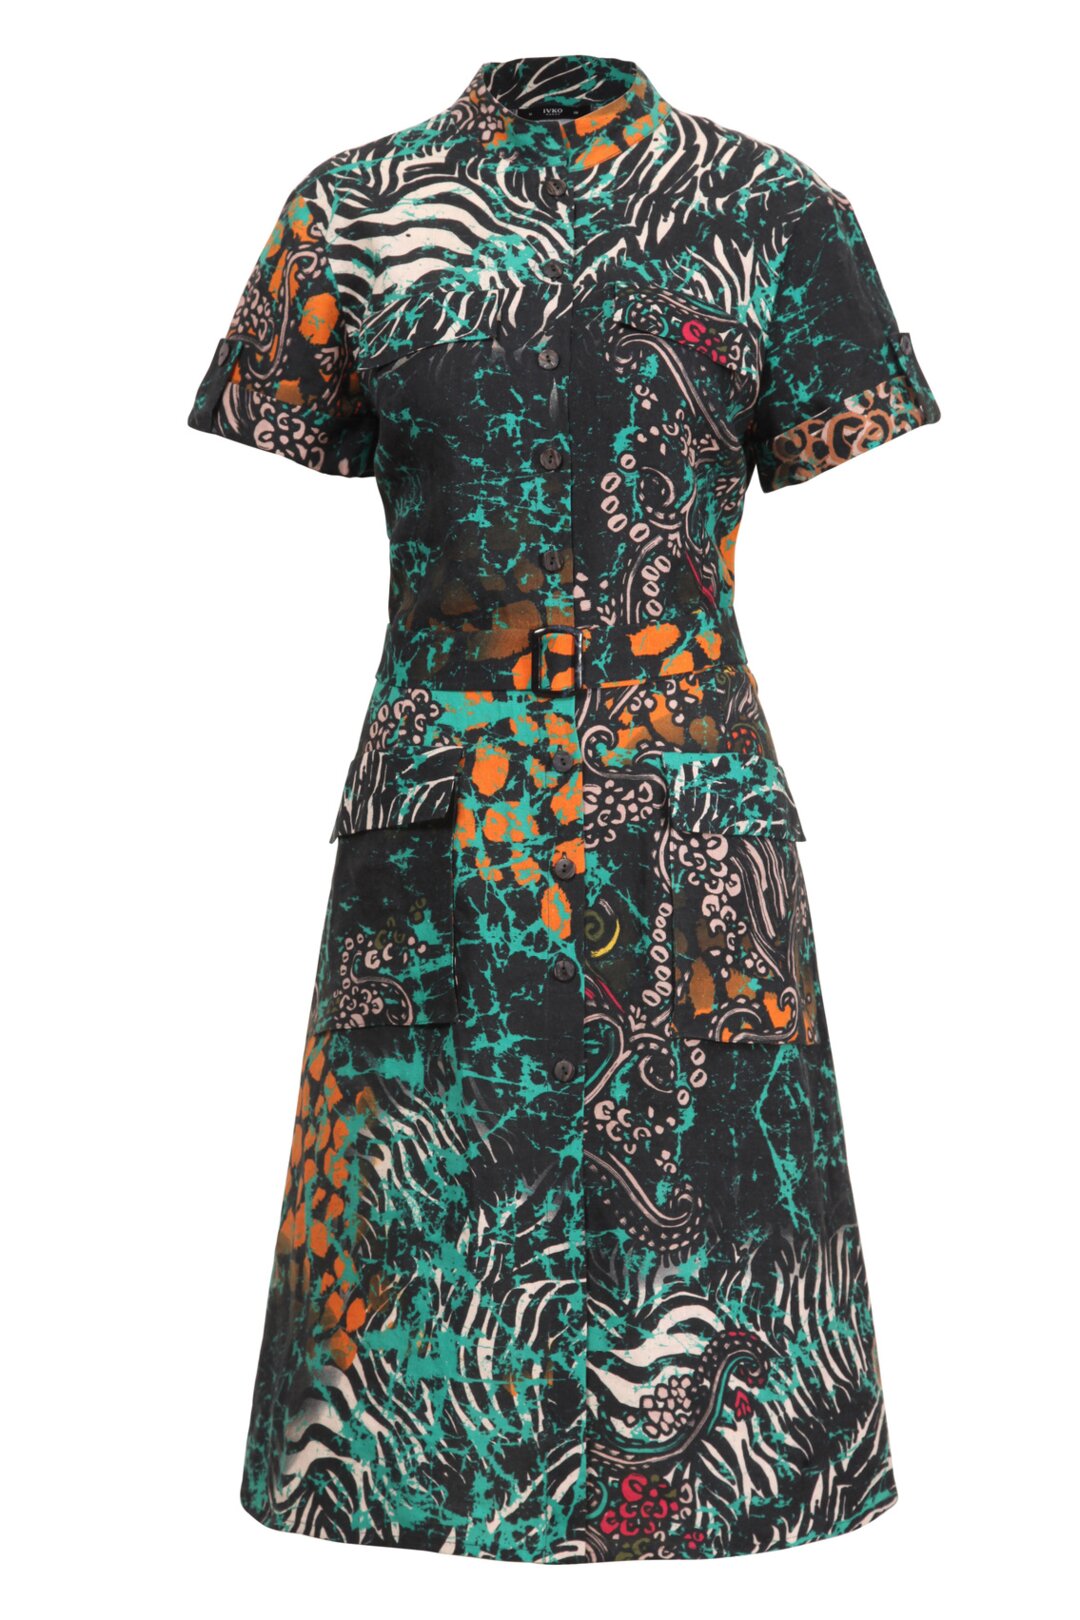 Printed Safari Dress